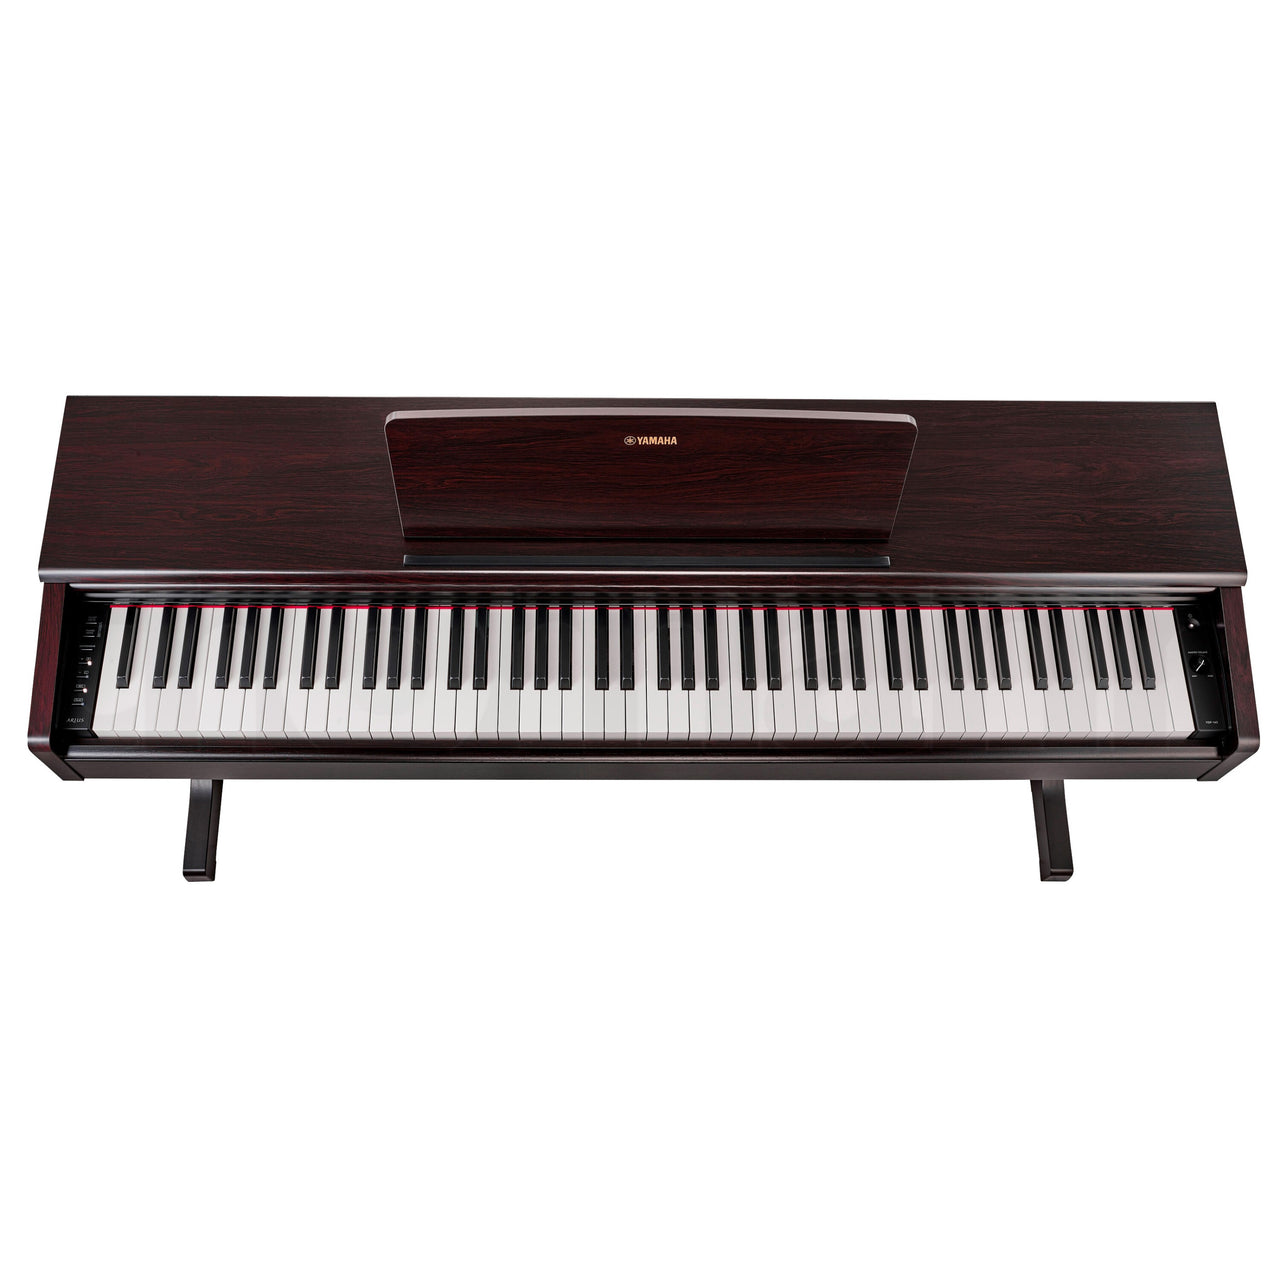 Piano Digital Yamaha Arius Rosewood C/adaptador Pa150, Ydp145rset